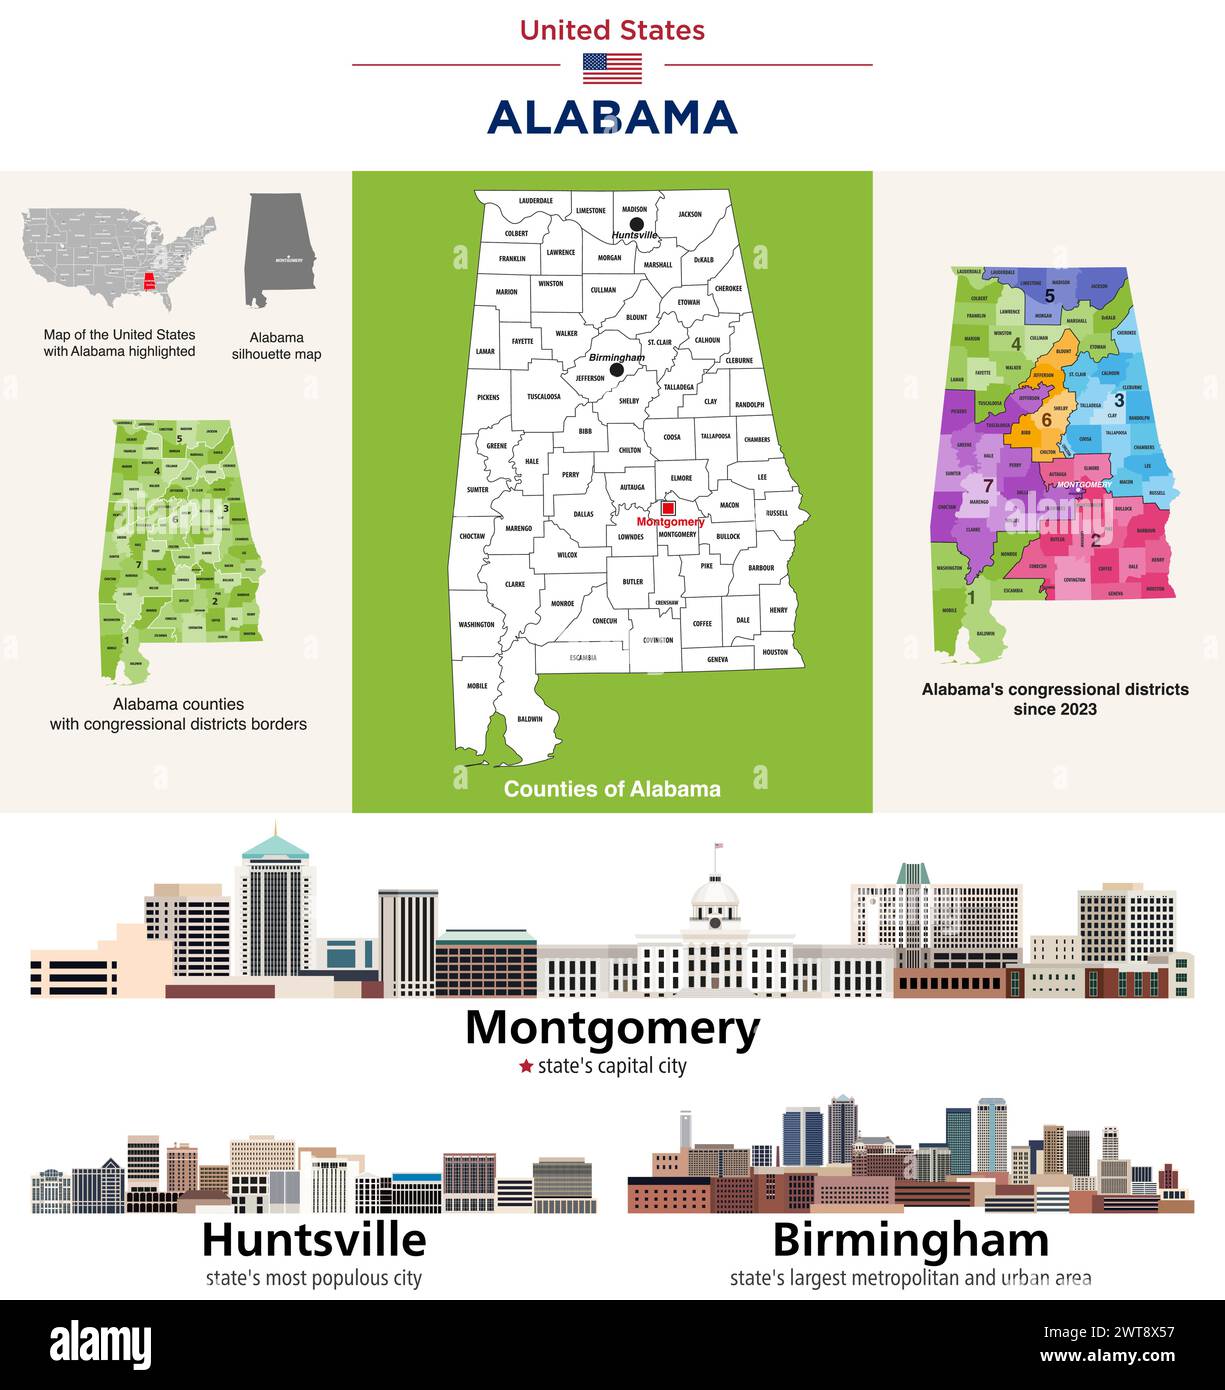 Carte des comtés de l'Alabama et carte des districts du Congrès depuis 2023. Montgomery skyline (capitale de l'État), Huntsville et Birmingham - lar de l'État Illustration de Vecteur